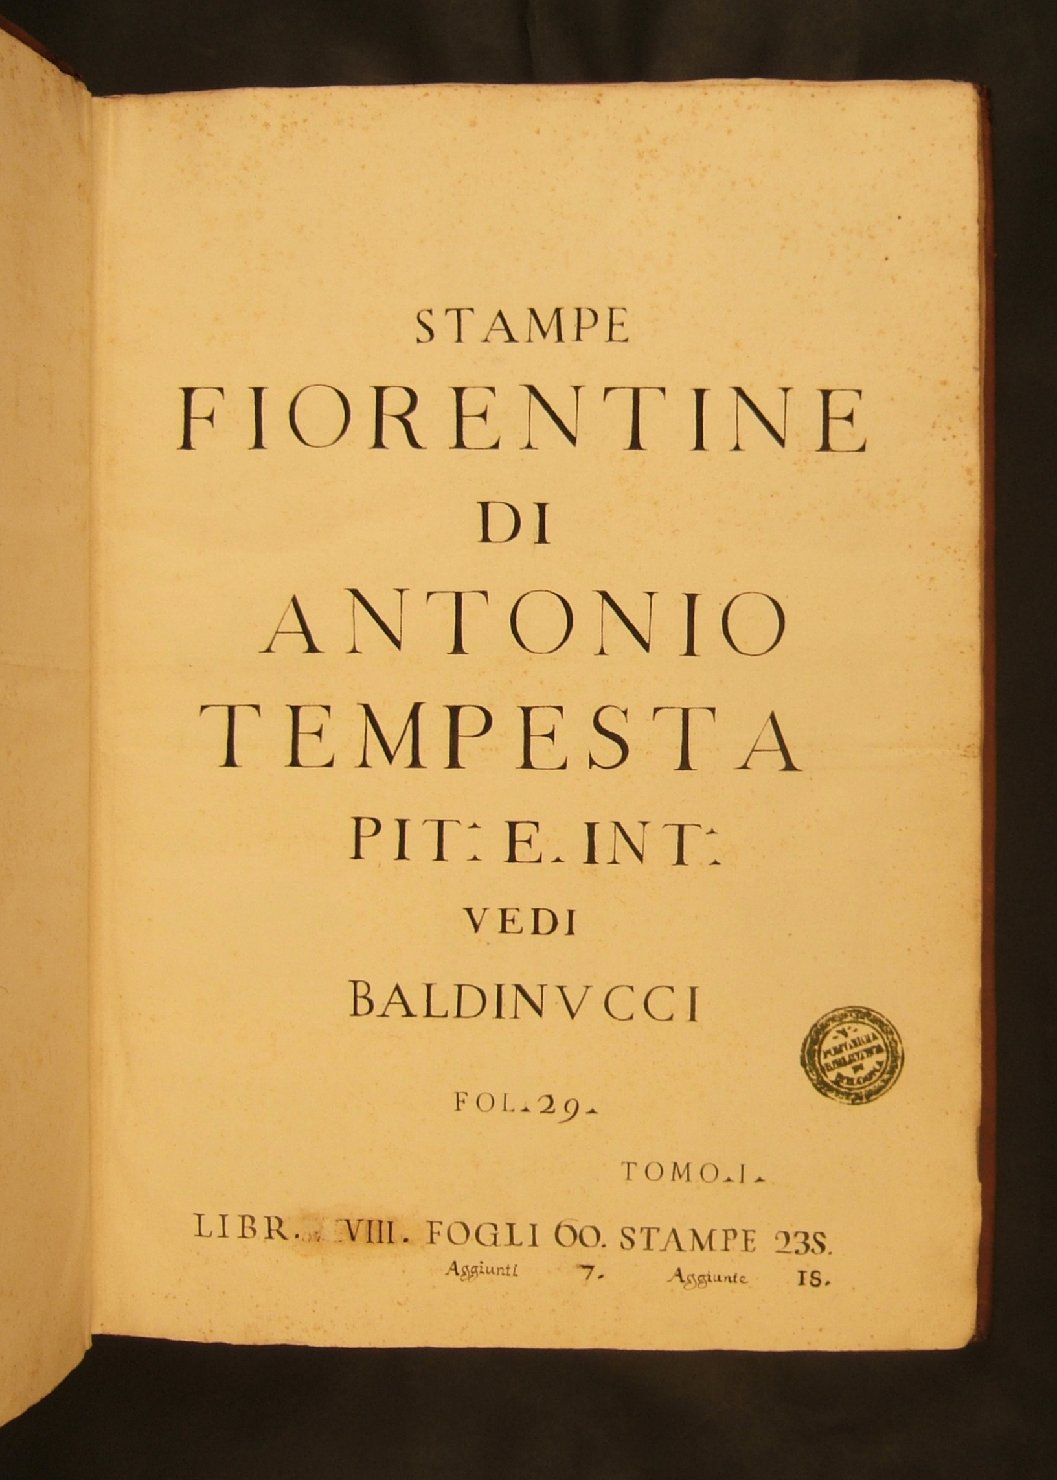 Frontespizio vol. 028: "STAMPE FIORENTINE DI ANTONIO TEMPESTA PIT: E: INT: VEDI BALDUCCI FOL. 29 TOMO I LIBR. (...)VIII. FOGLI 60. STAMPE 235. AGGIUNTI 7. AGGIUNTE 18.", libri (raccolta) - ambito italiano (sec. XVIII)